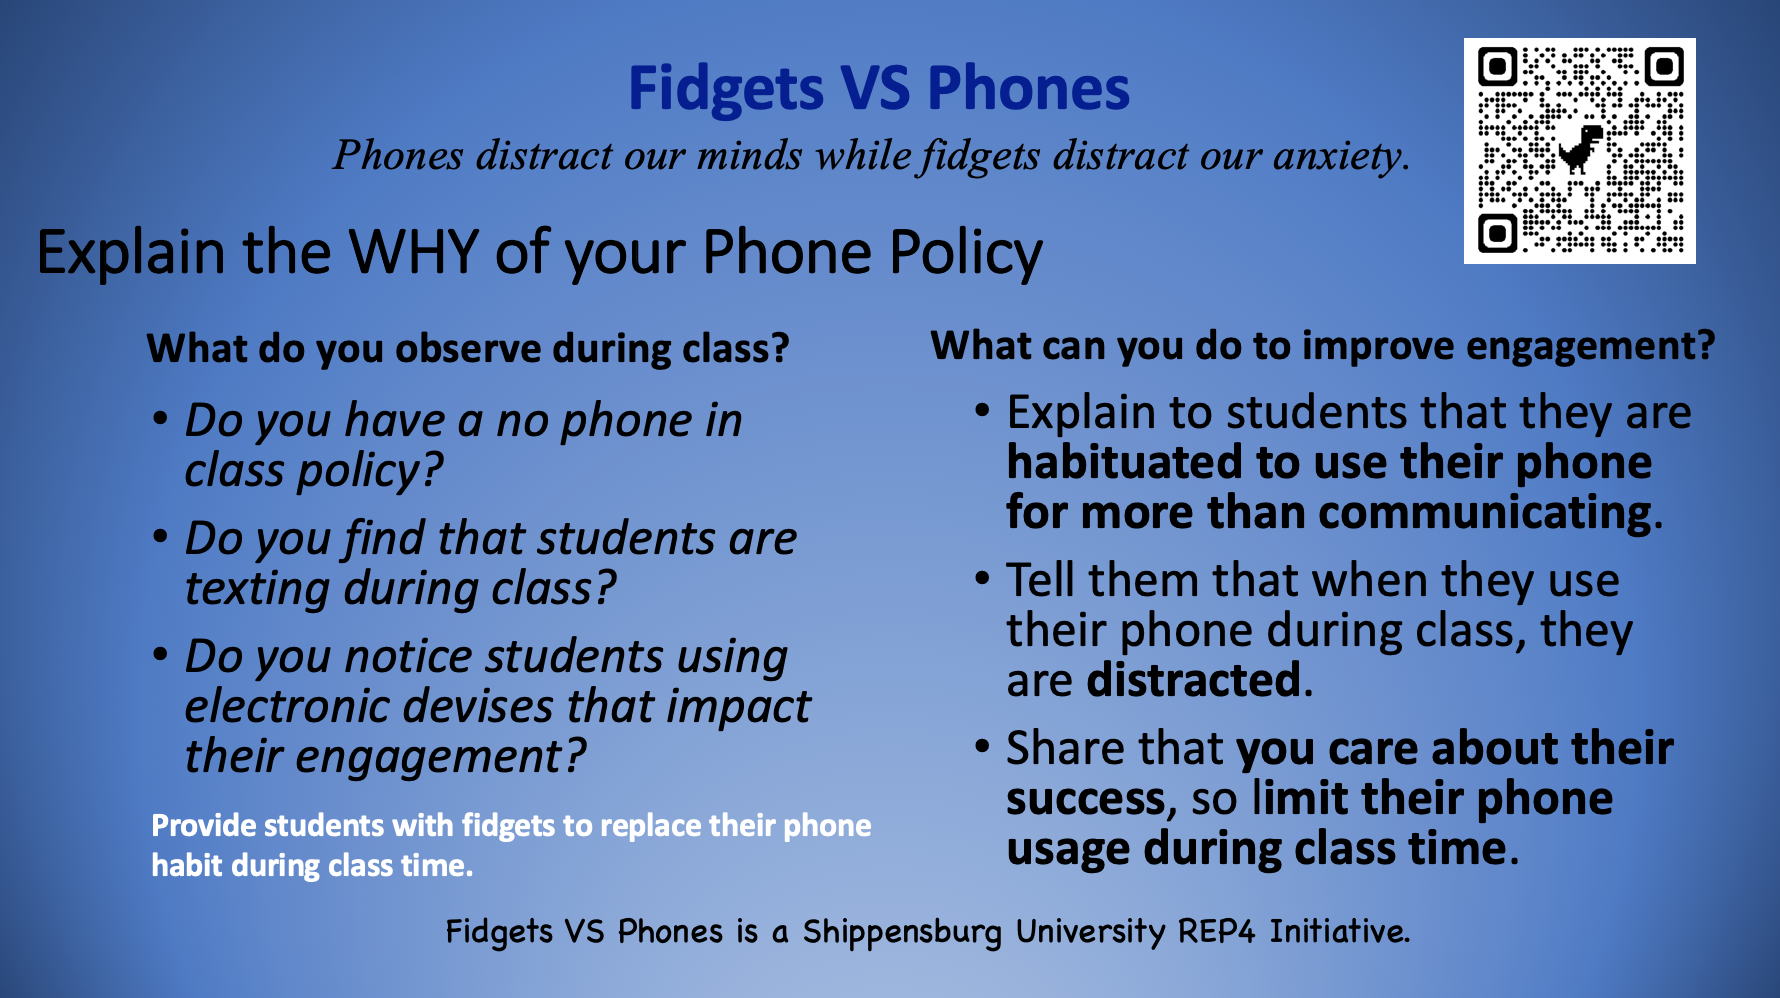 Fidgets versus Phones